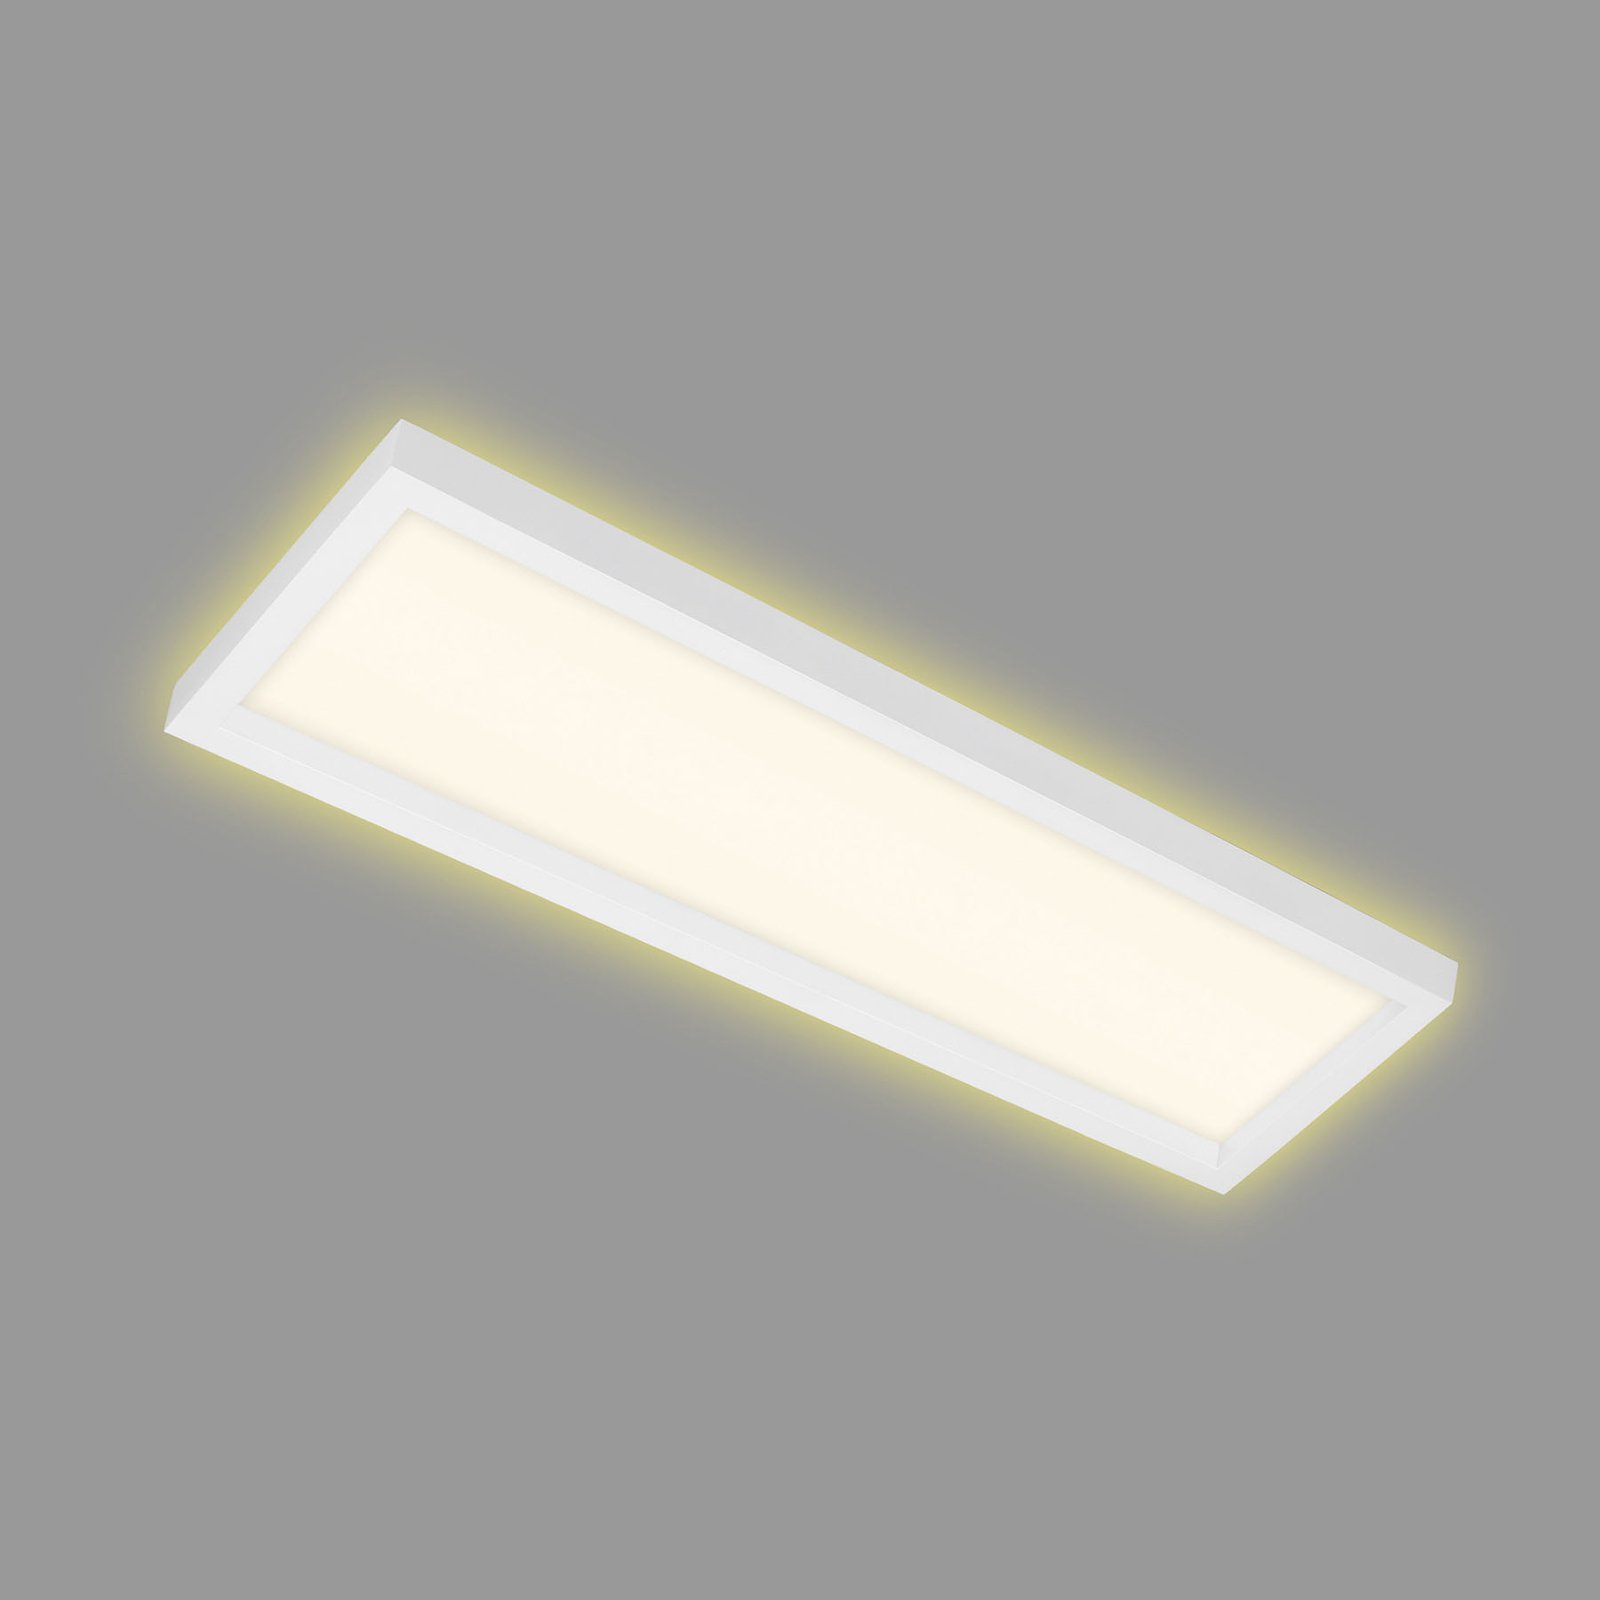 7365 LED ceiling lamp, 58 x 20 cm, white